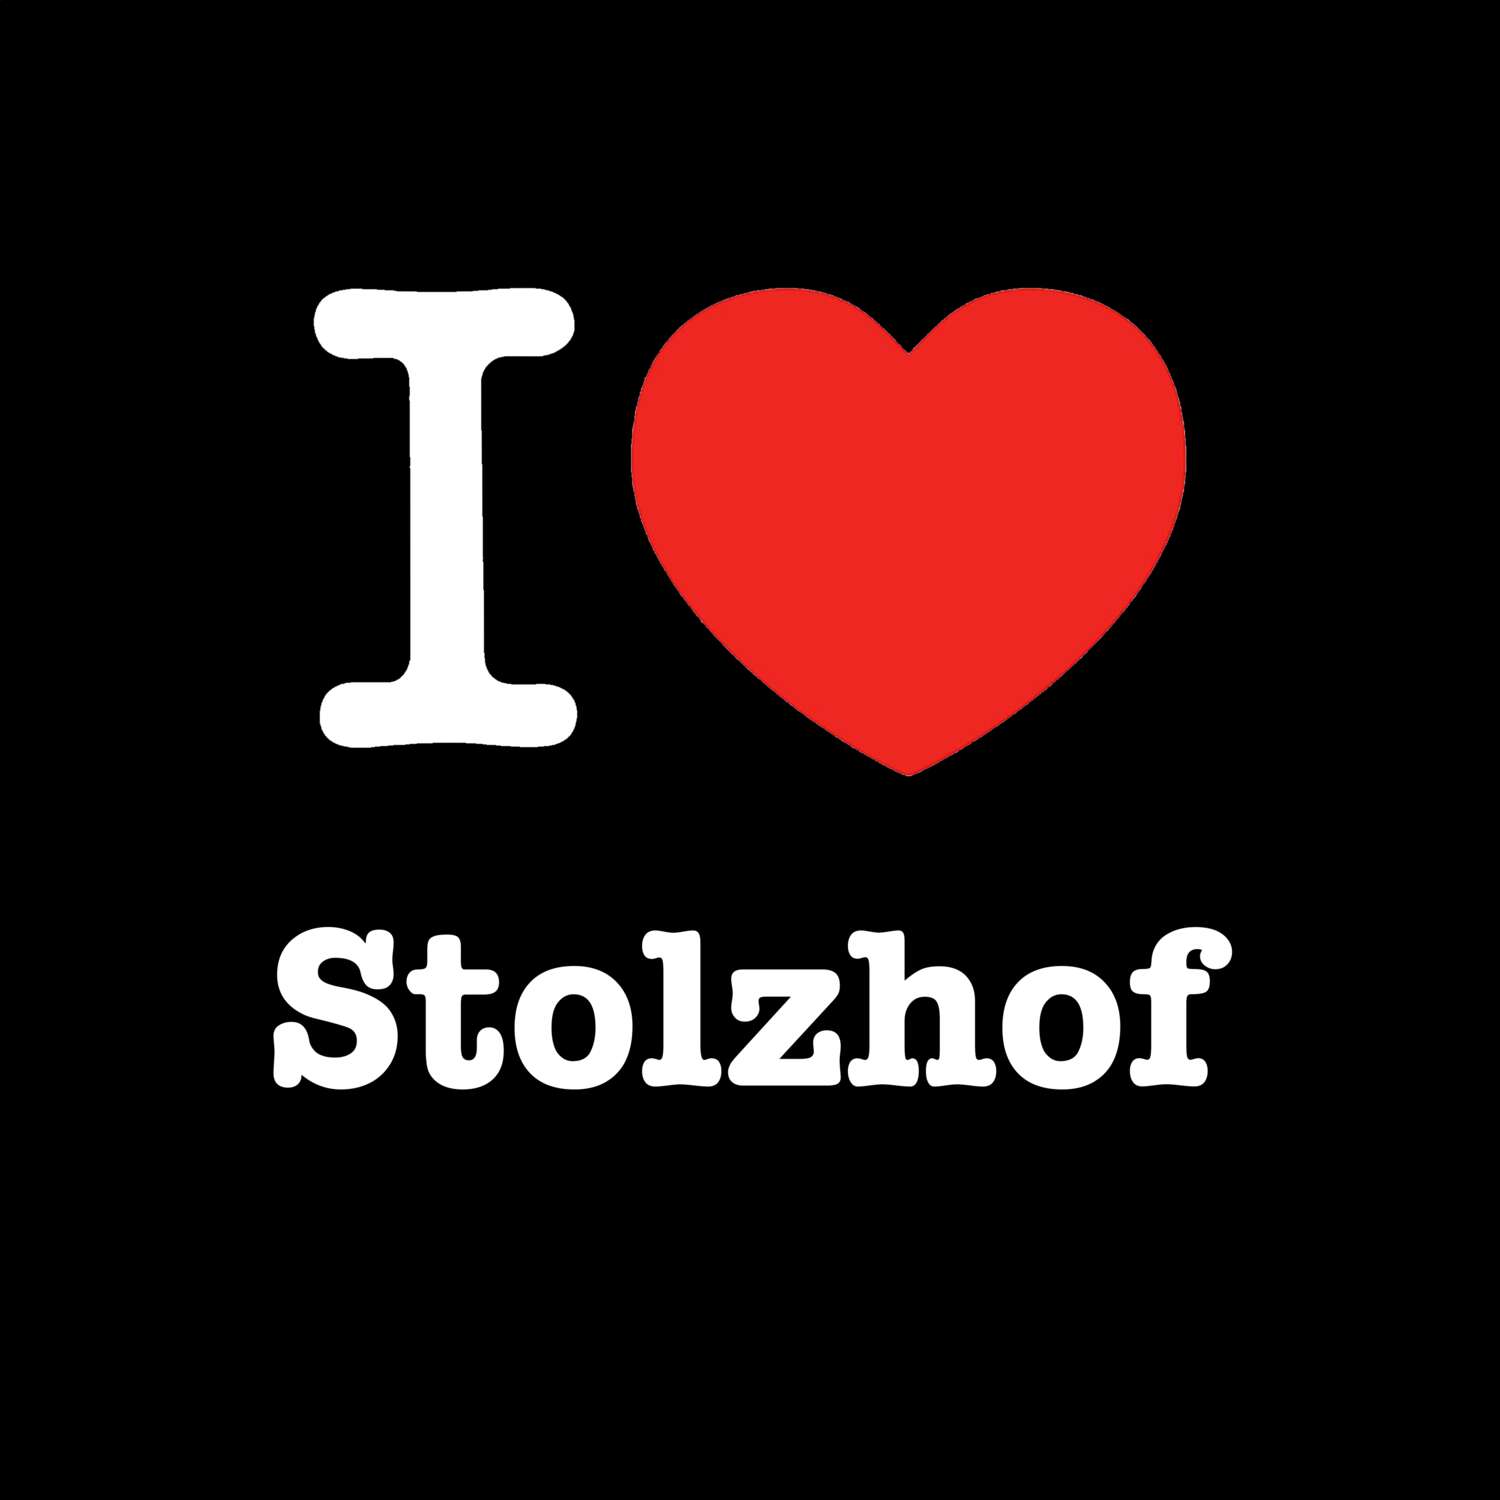 Stolzhof T-Shirt »I love«